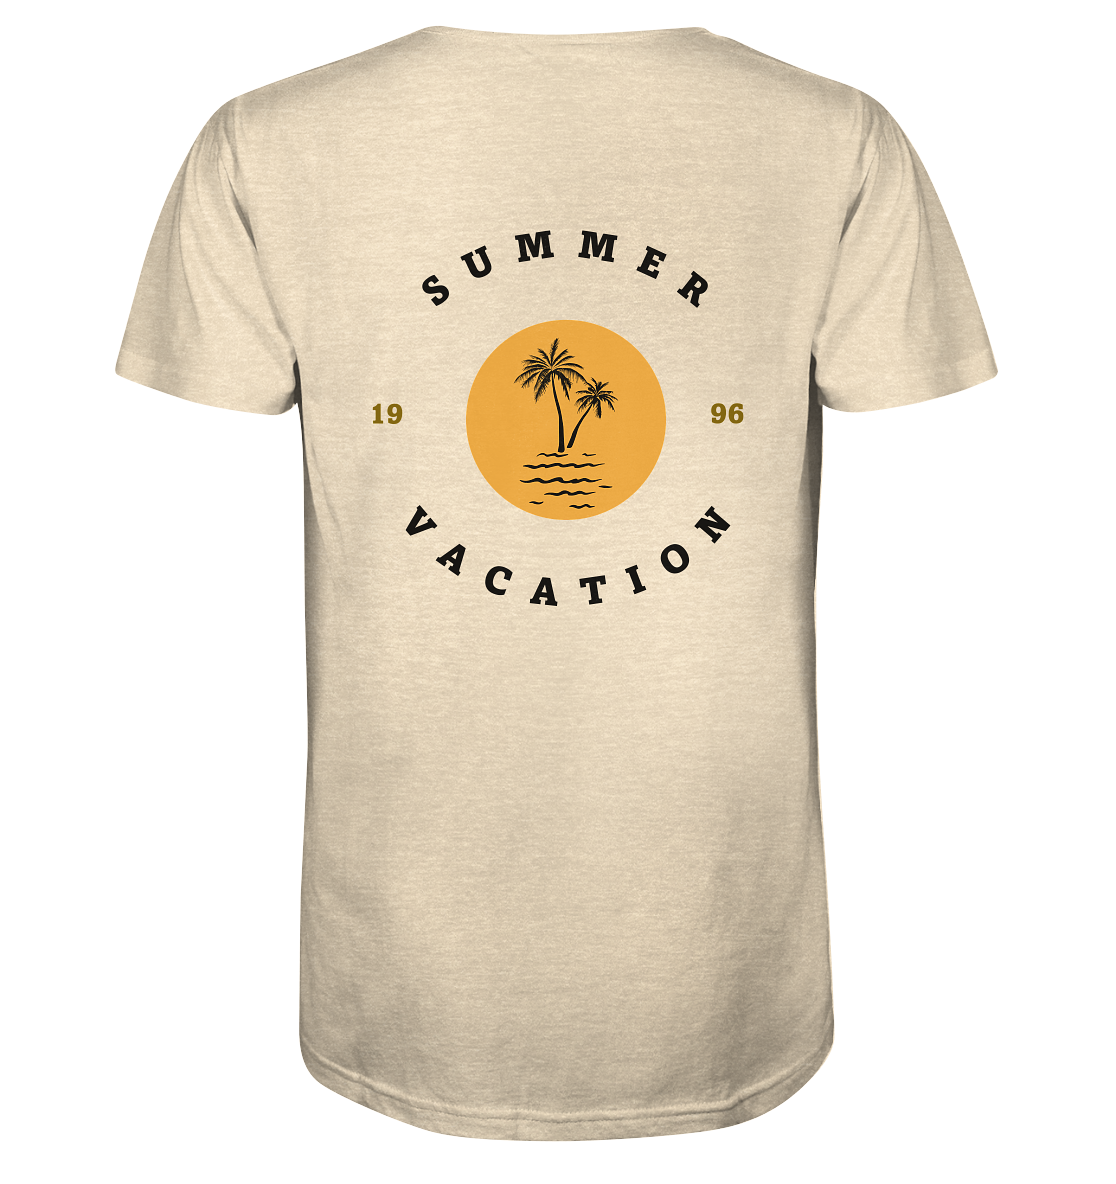 : Bio Baumwolle T-Shirt vegan fair Nachhaltigkeit Reisen Summer Vacation